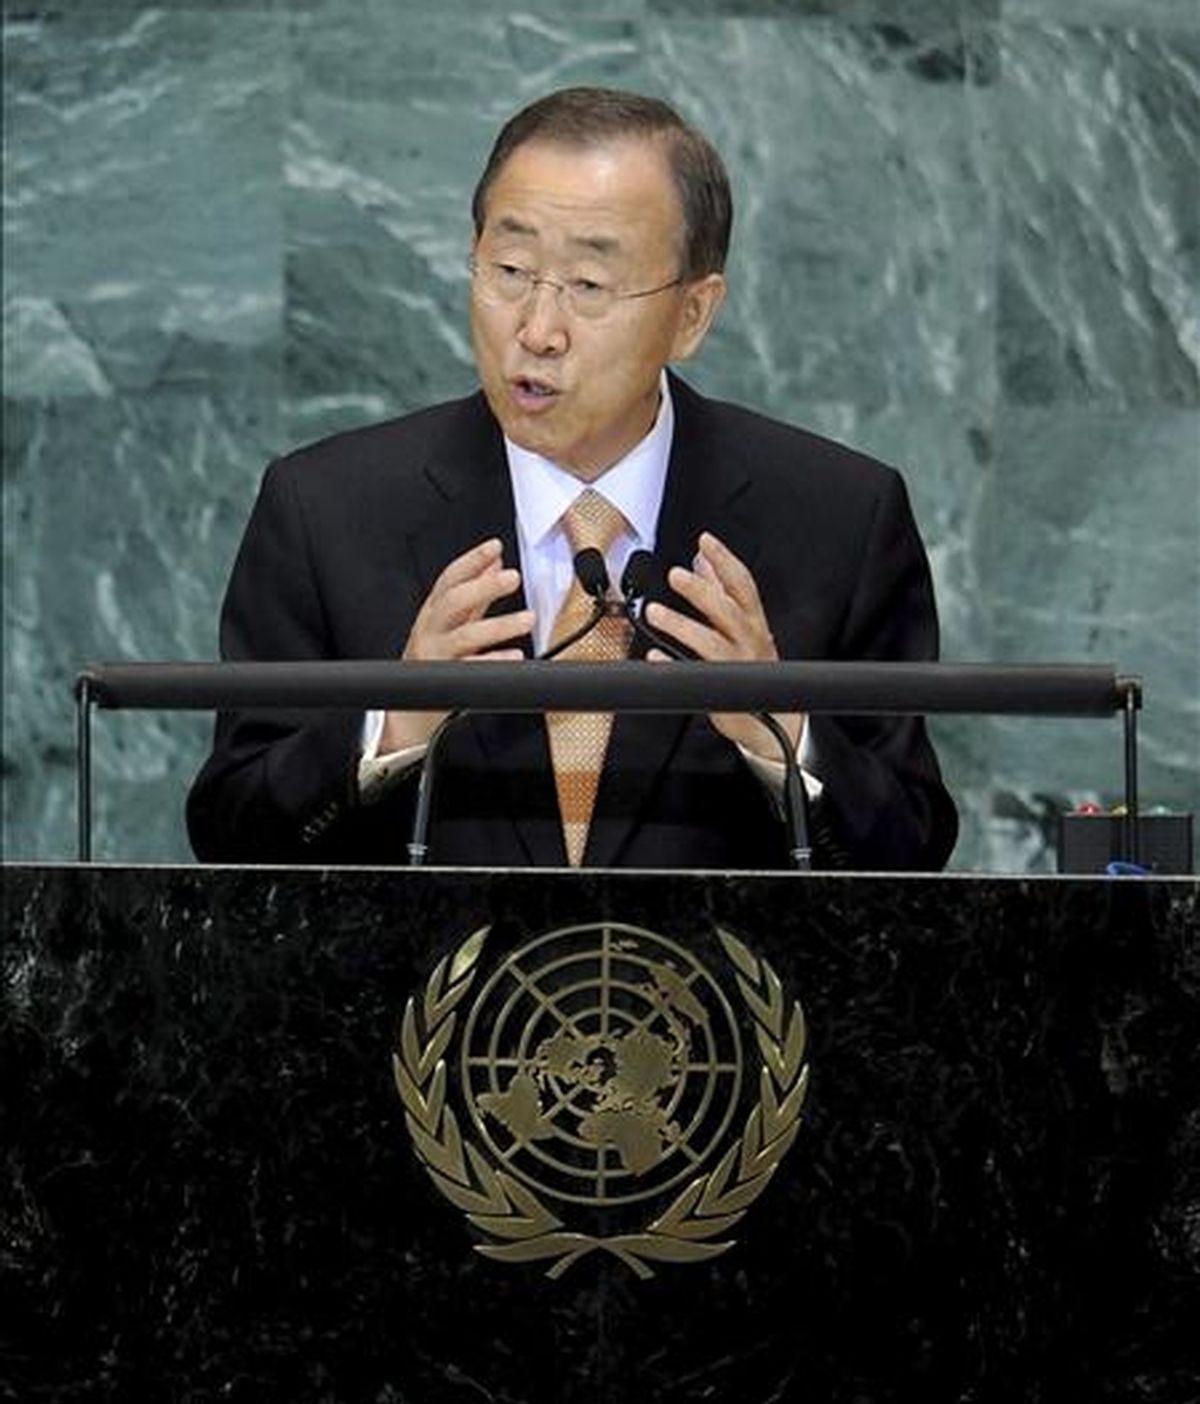 El secretario general de la ONU, Ban Ki-moon, participa en la Convención sobre biodiversidad, donde presentó una nueva estrategia global para acelerar la reducción de la mortalidad infantil y materna. EFE